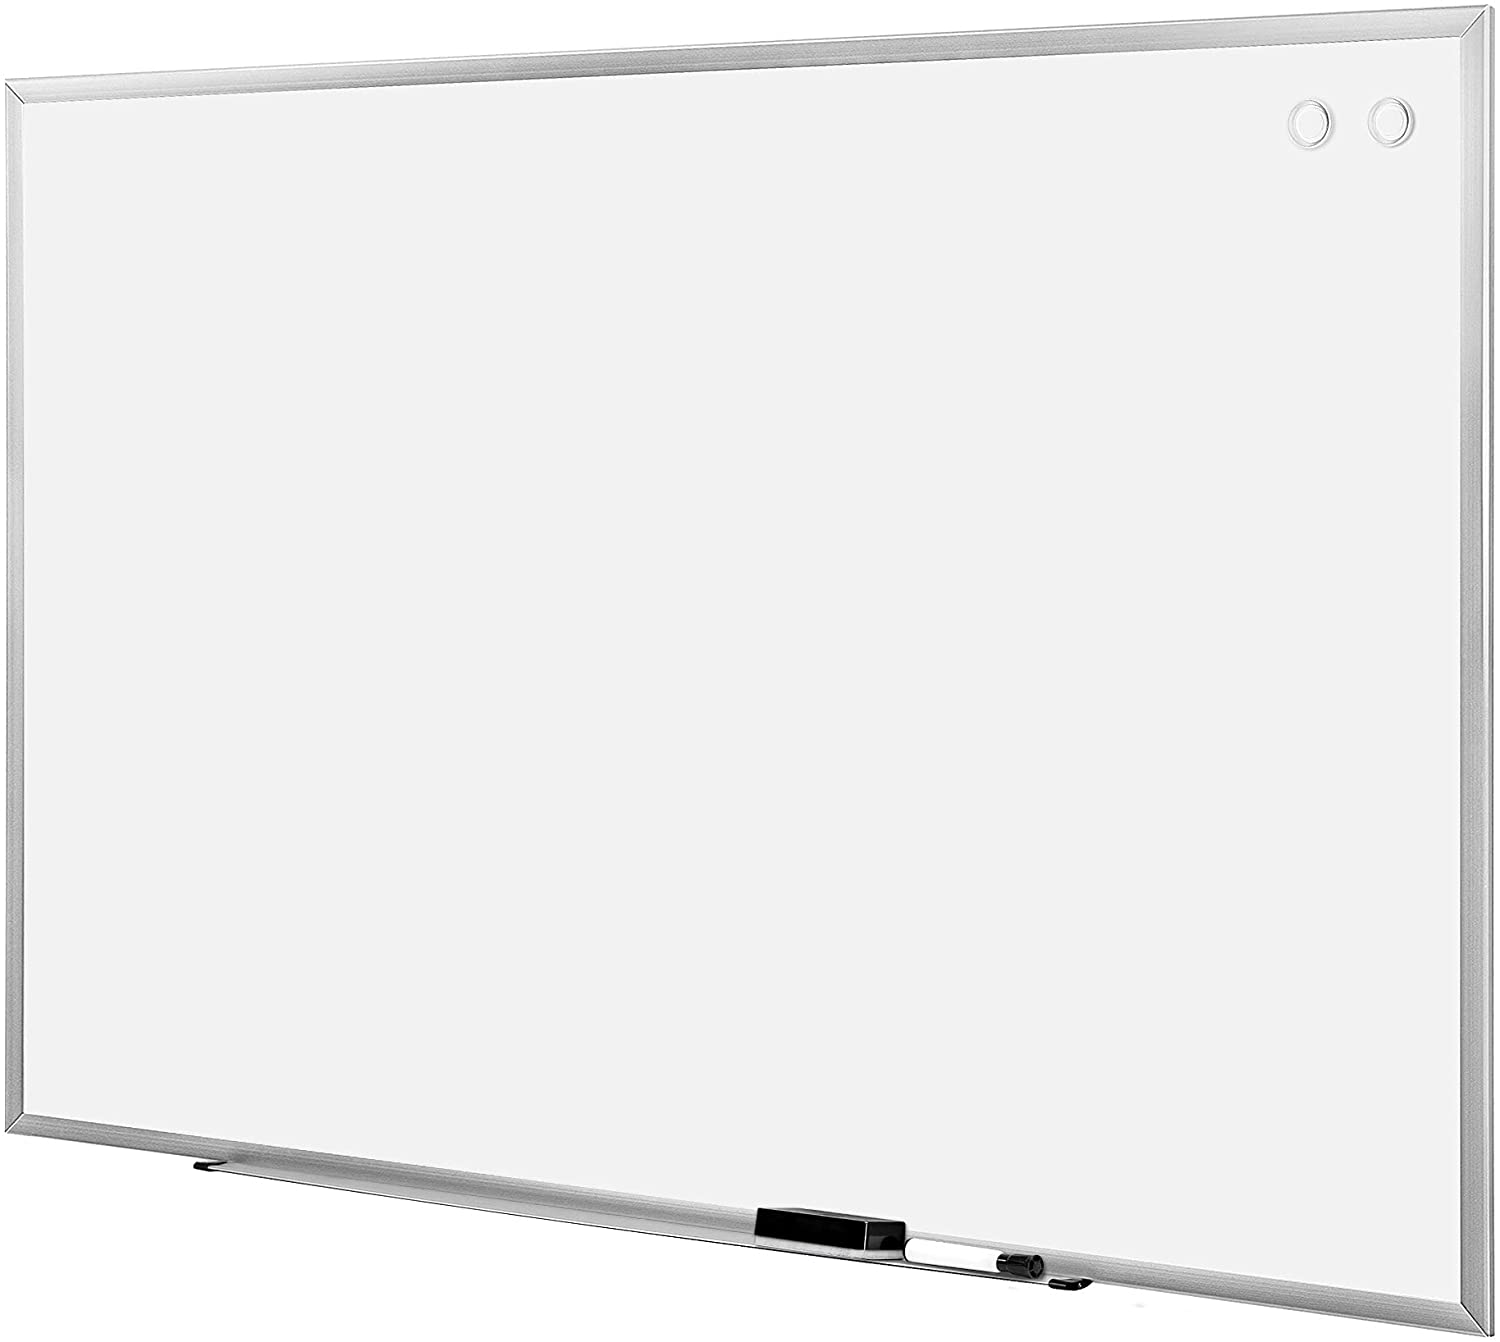 AmazonBasics Lightweight Organizing Magnetic Whiteboard